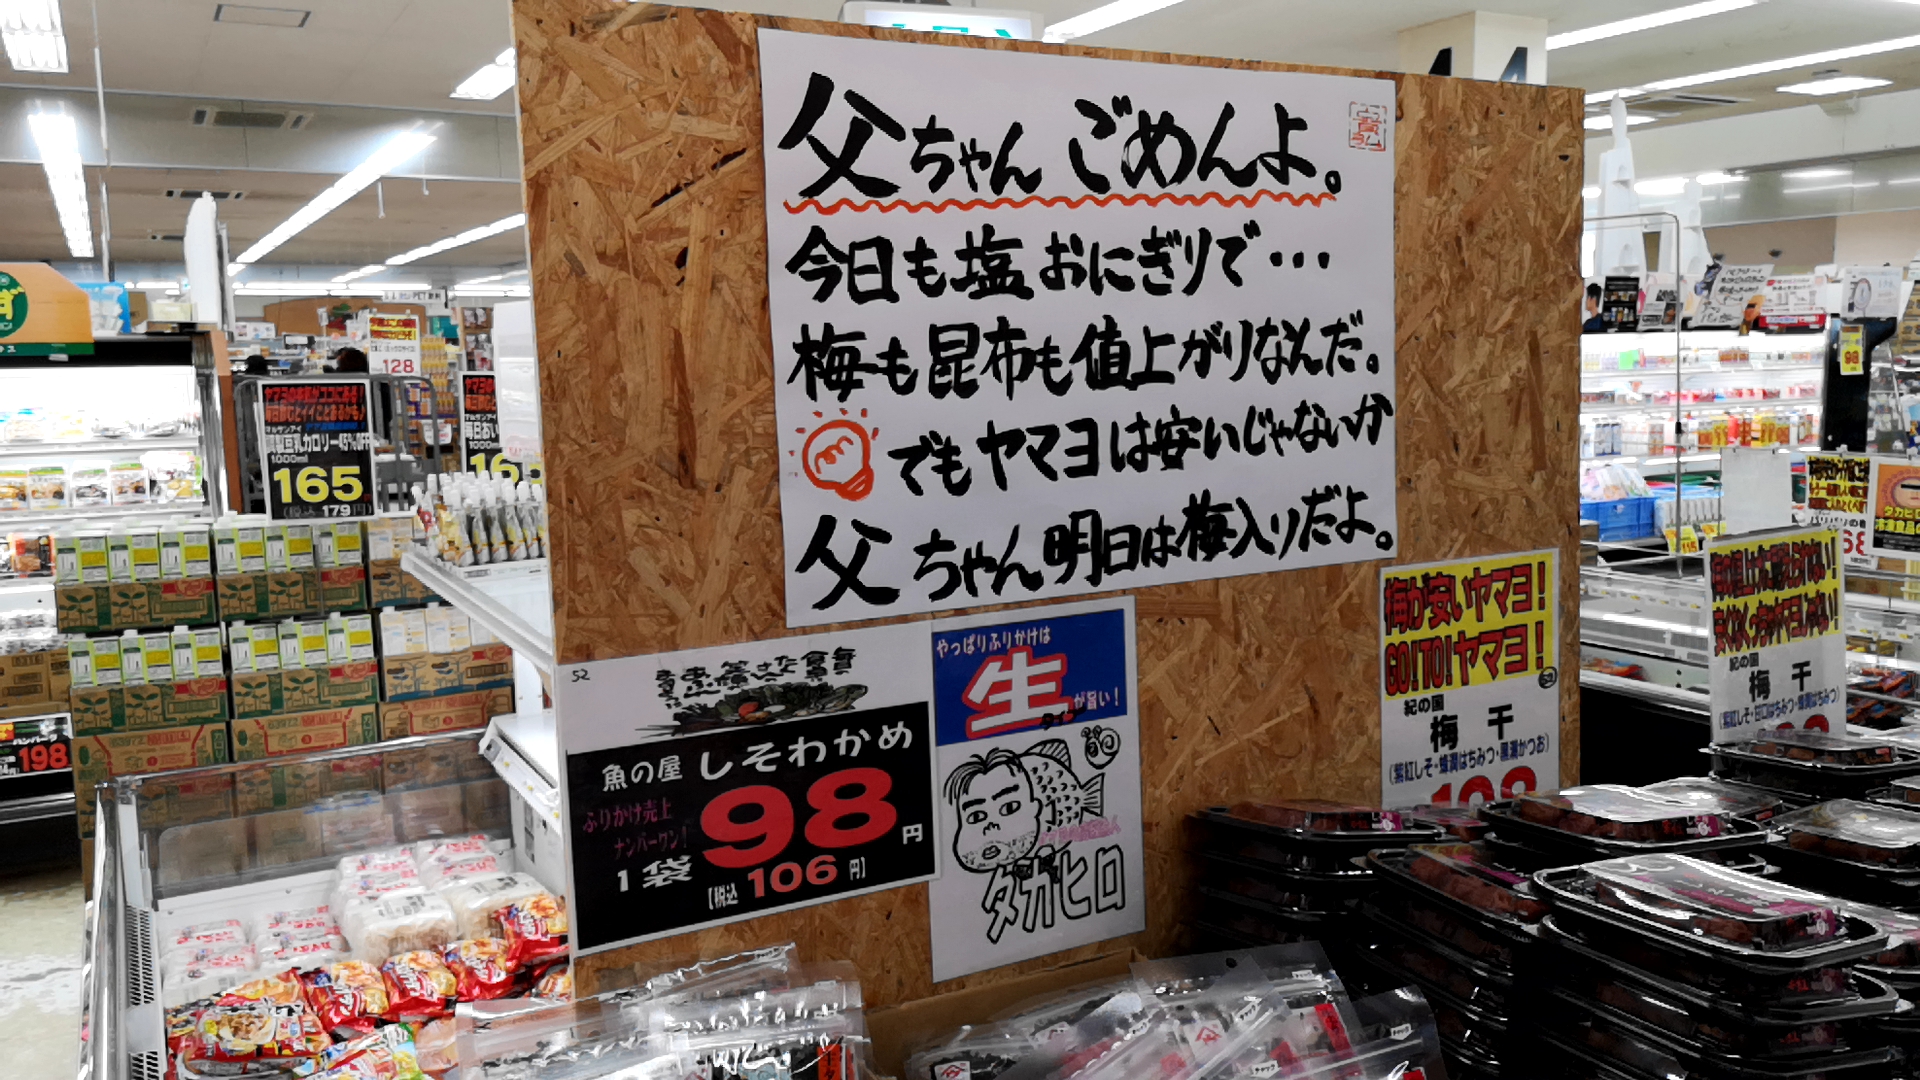 ヤマヨ 十和田 店